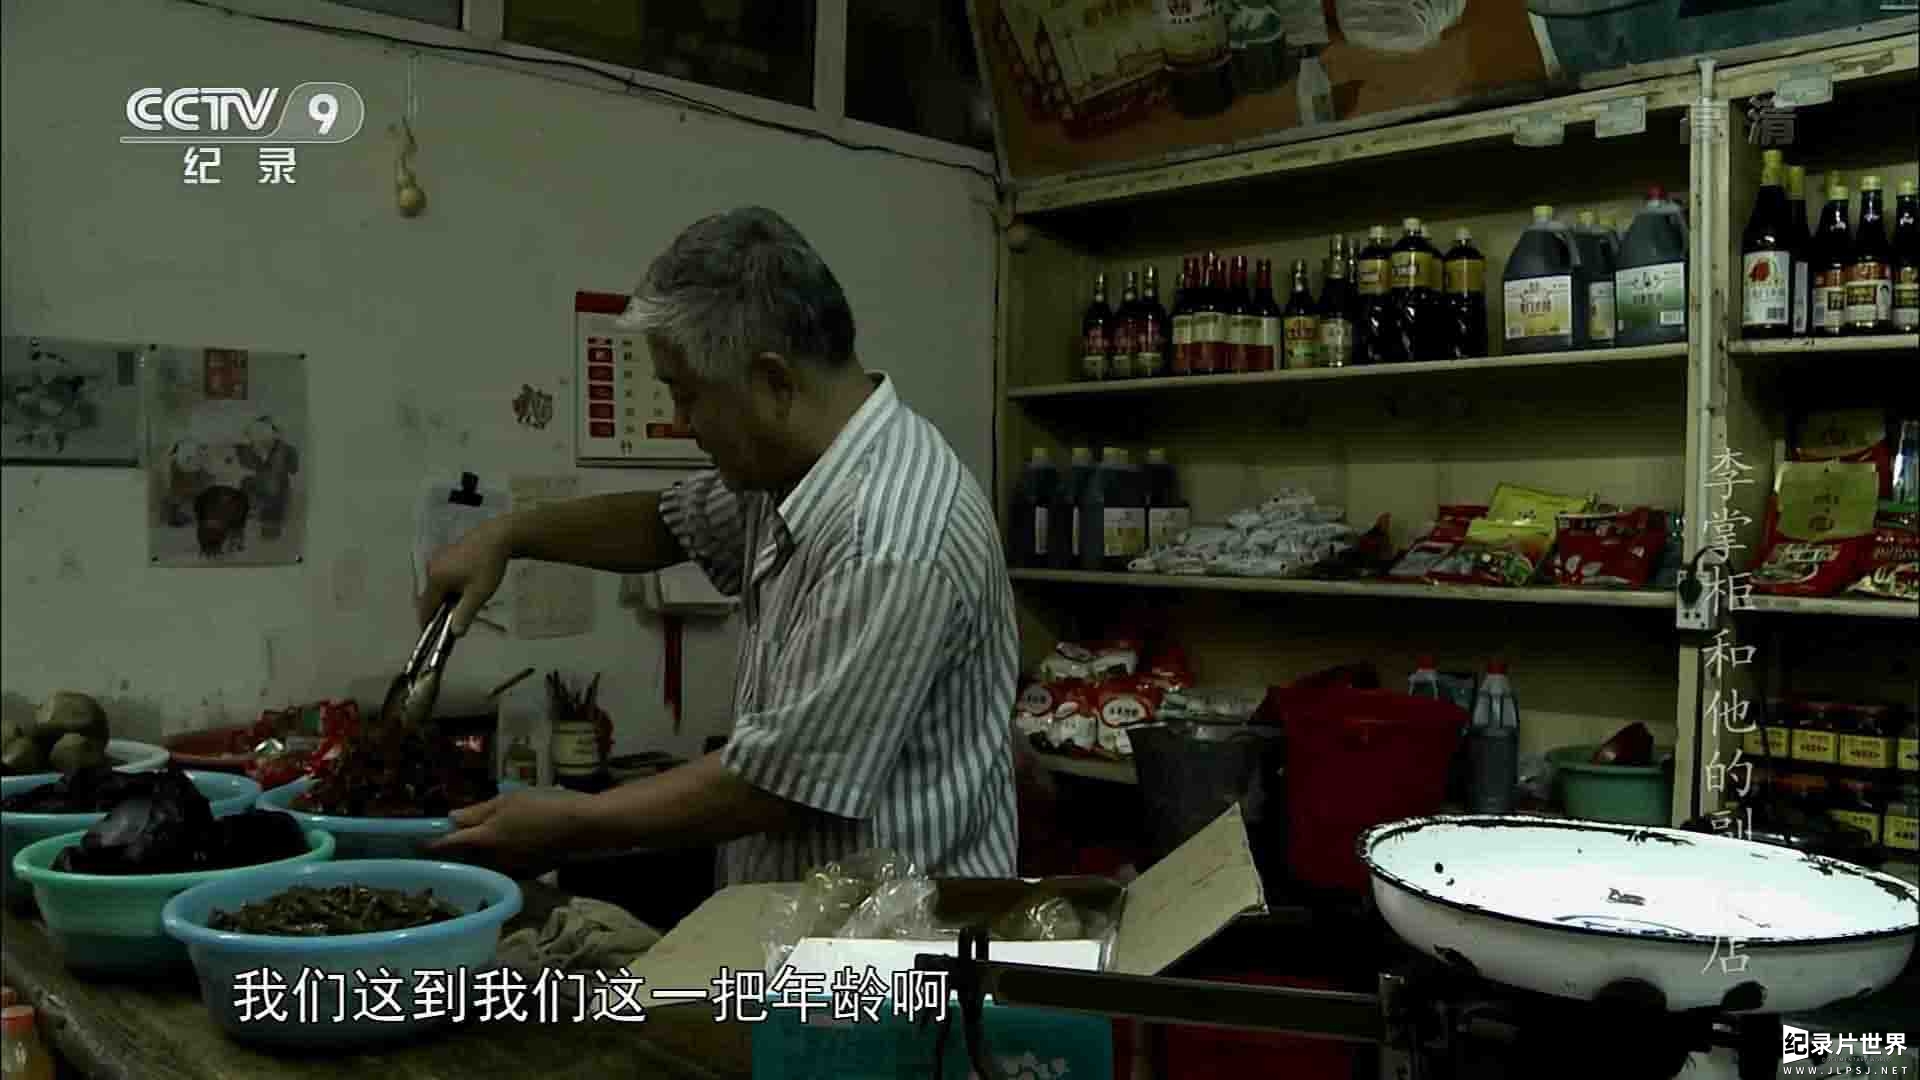 央视纪录片《李掌柜和他的副食店》全1集